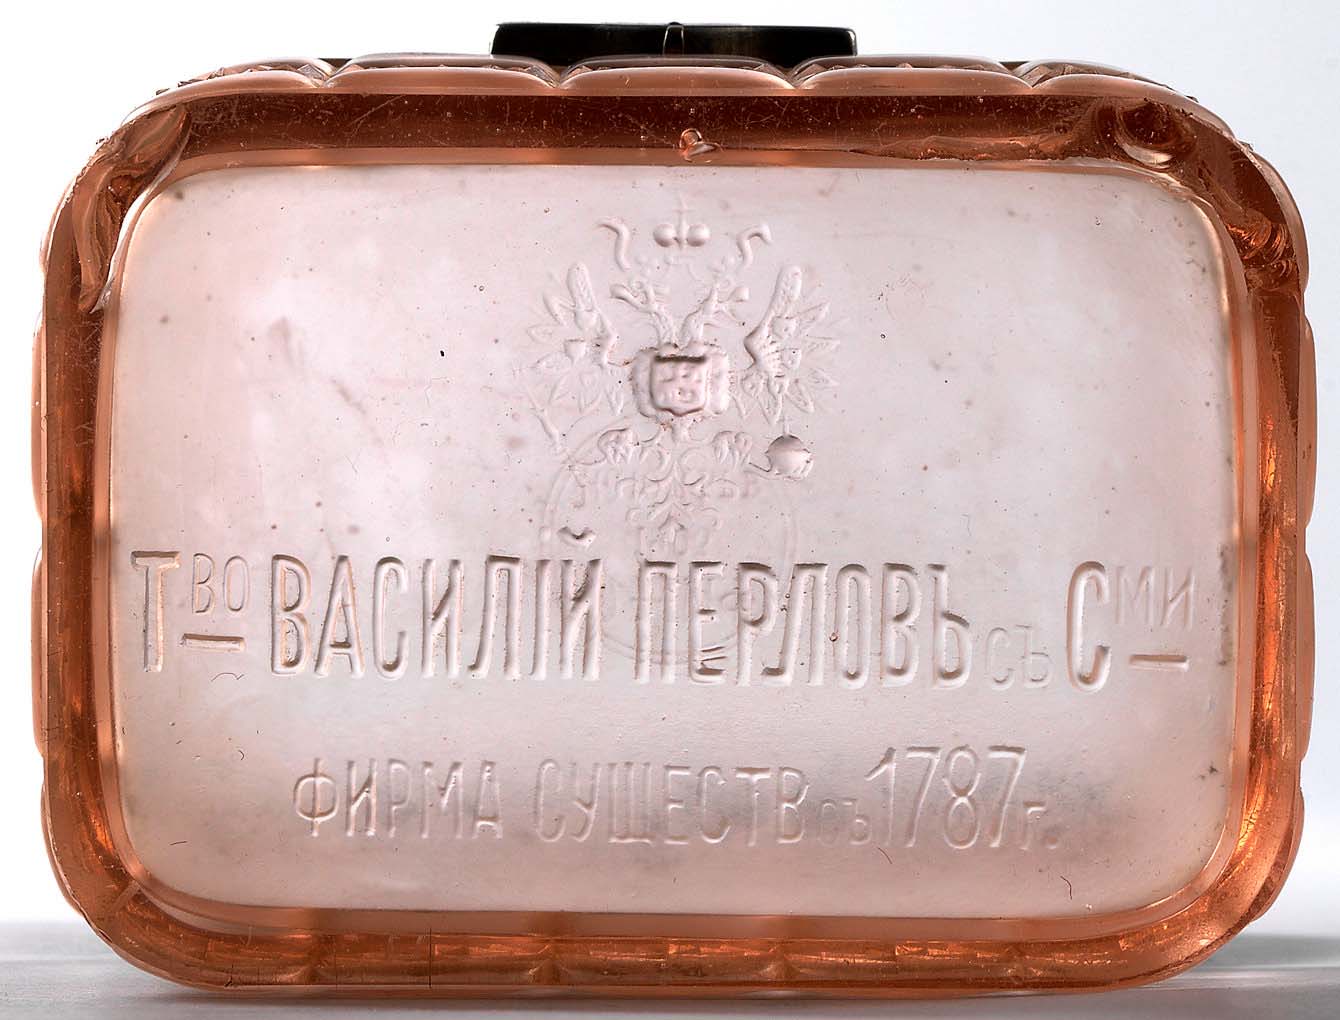 Abb. 2007-2/089 Teekasten mit Pseudoschliff, rosa-farbenes, mattiertes Pressglas, H 10,2 cm, B xxx cm, L 10,8 cm auf der Unterseite russisch-kyrillische Inschrift Vasili Perlov & Cie.